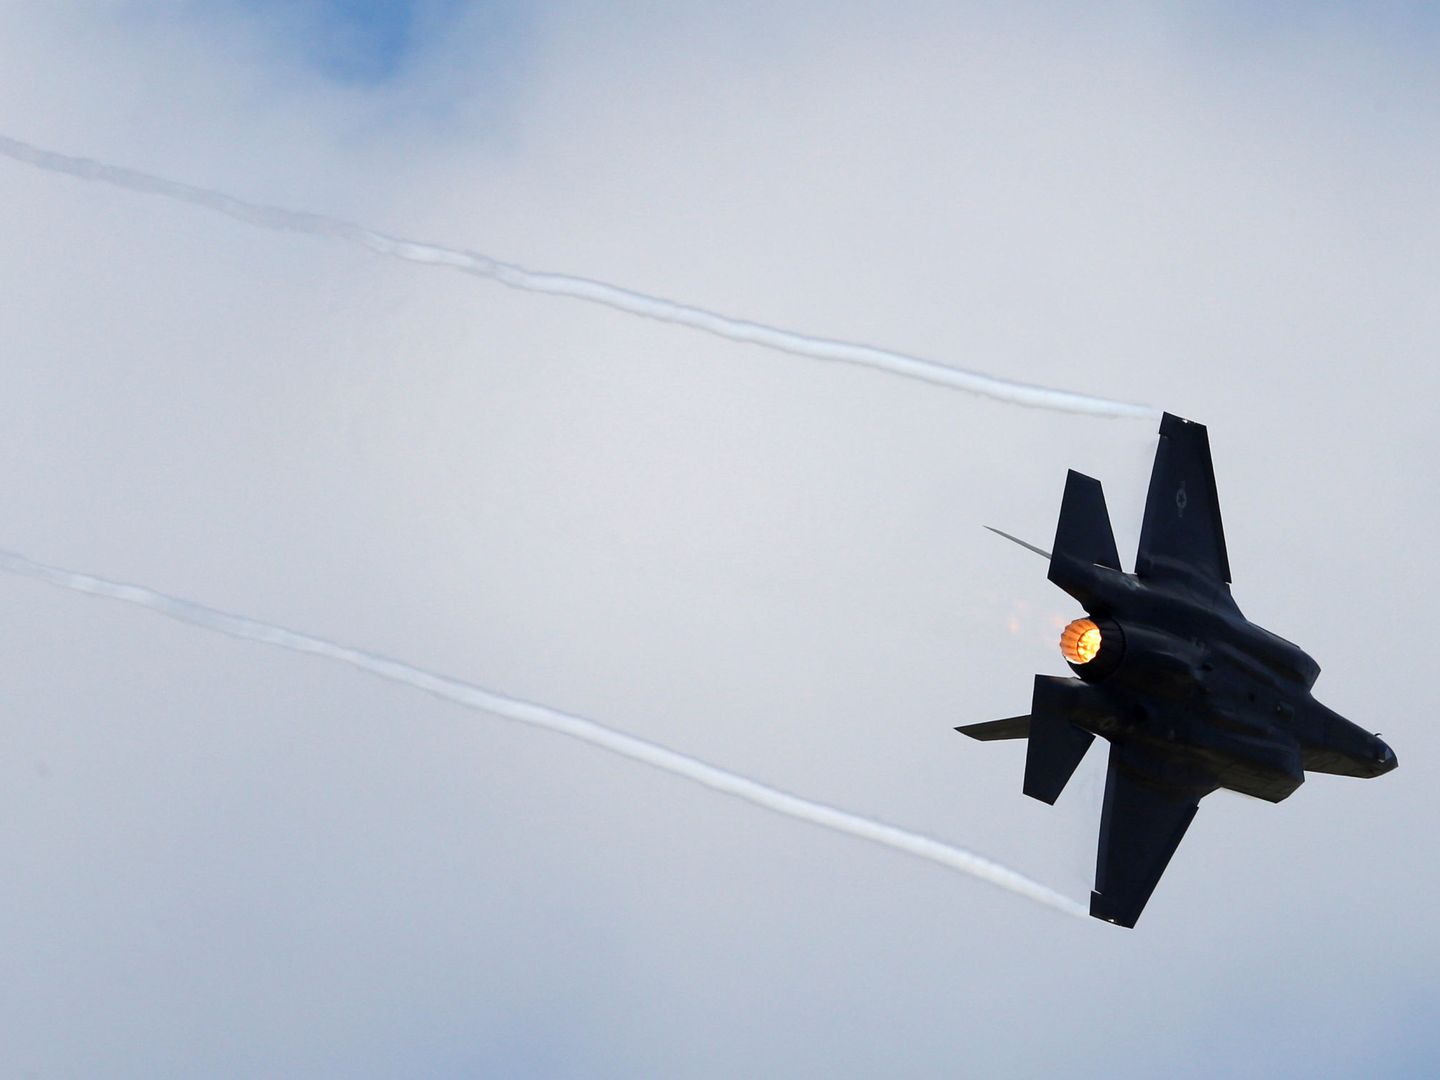 Algunos cazas militares, en la imagen un F-35, se diseñan específicamente para superar la velocidad del sonido. (Reuters)